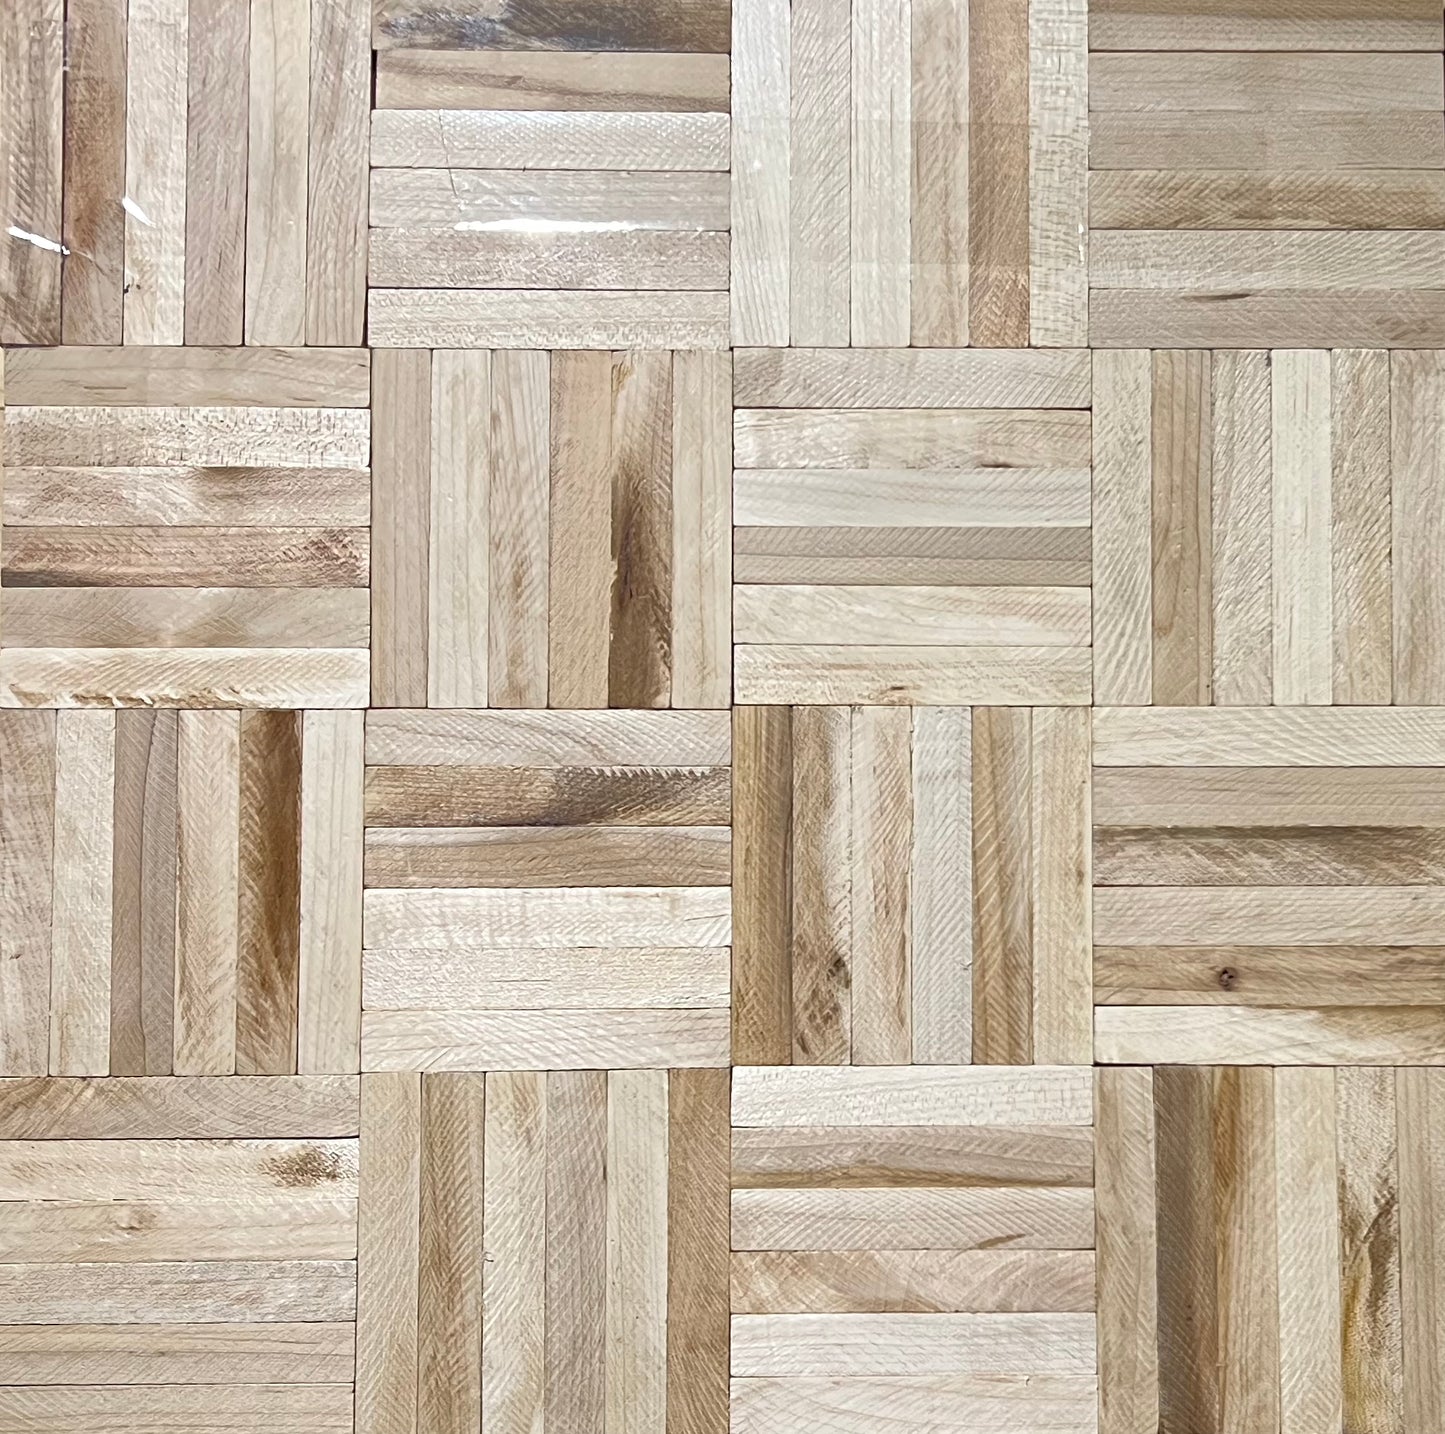 19" x 19" x 5/16" Hard Maple Unfinished 6-slat Parquet Hardwood Flooring